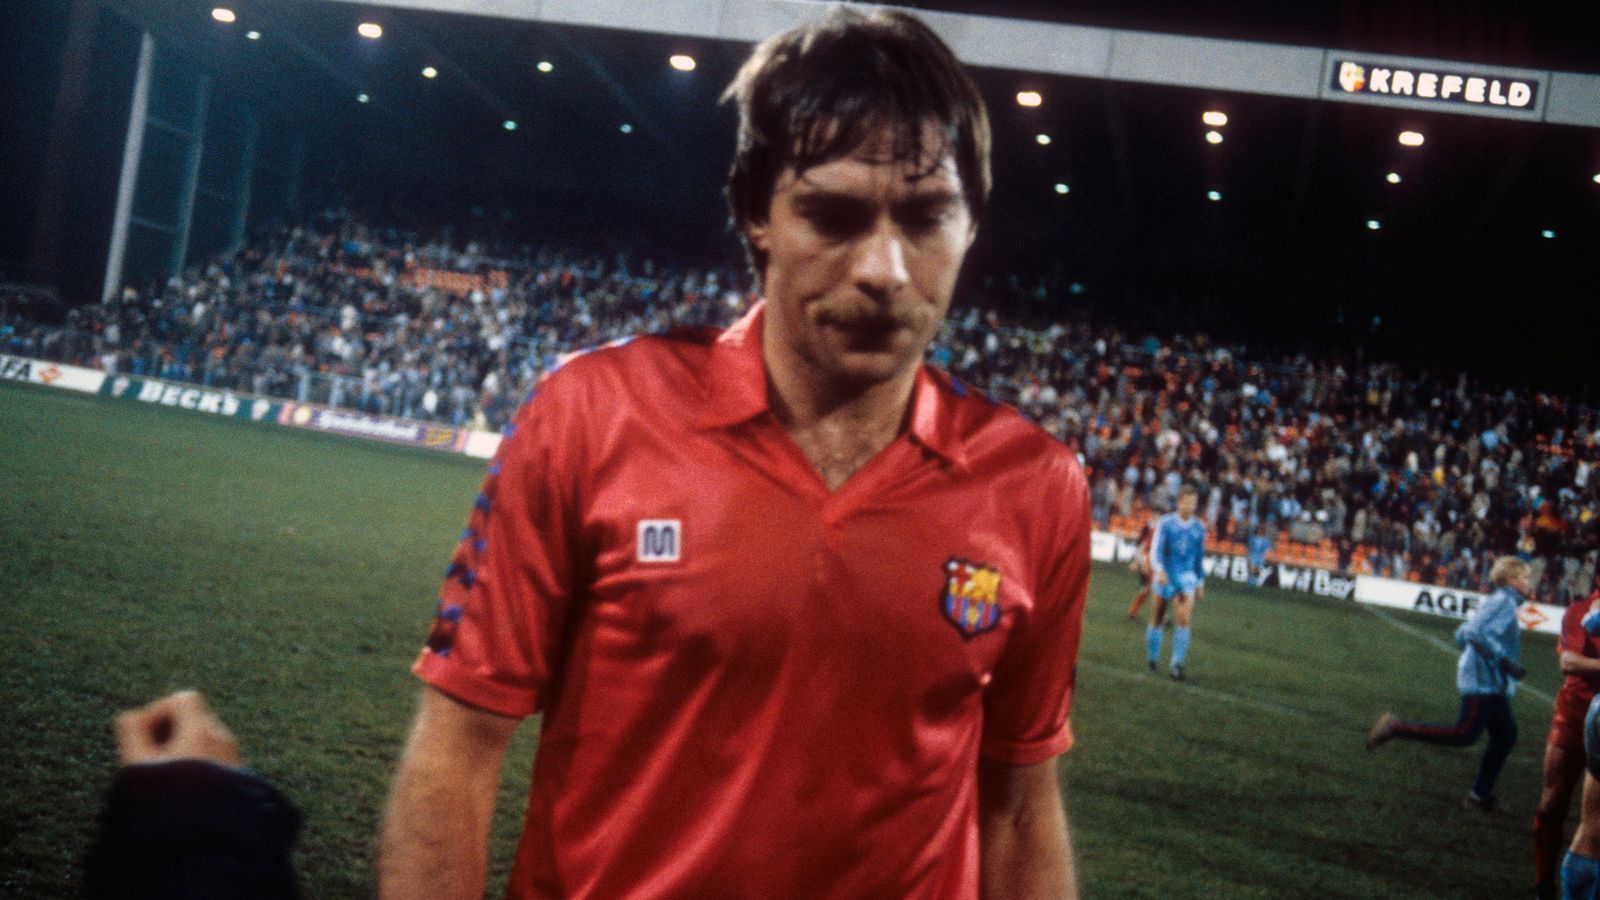 
                <strong>Platz 8 - Migueli</strong><br>
                Pflichtspiele für Barca: 453 (zwischen 1973 und 1988) - Tore: 23 - Position: Innenverteidiger
              